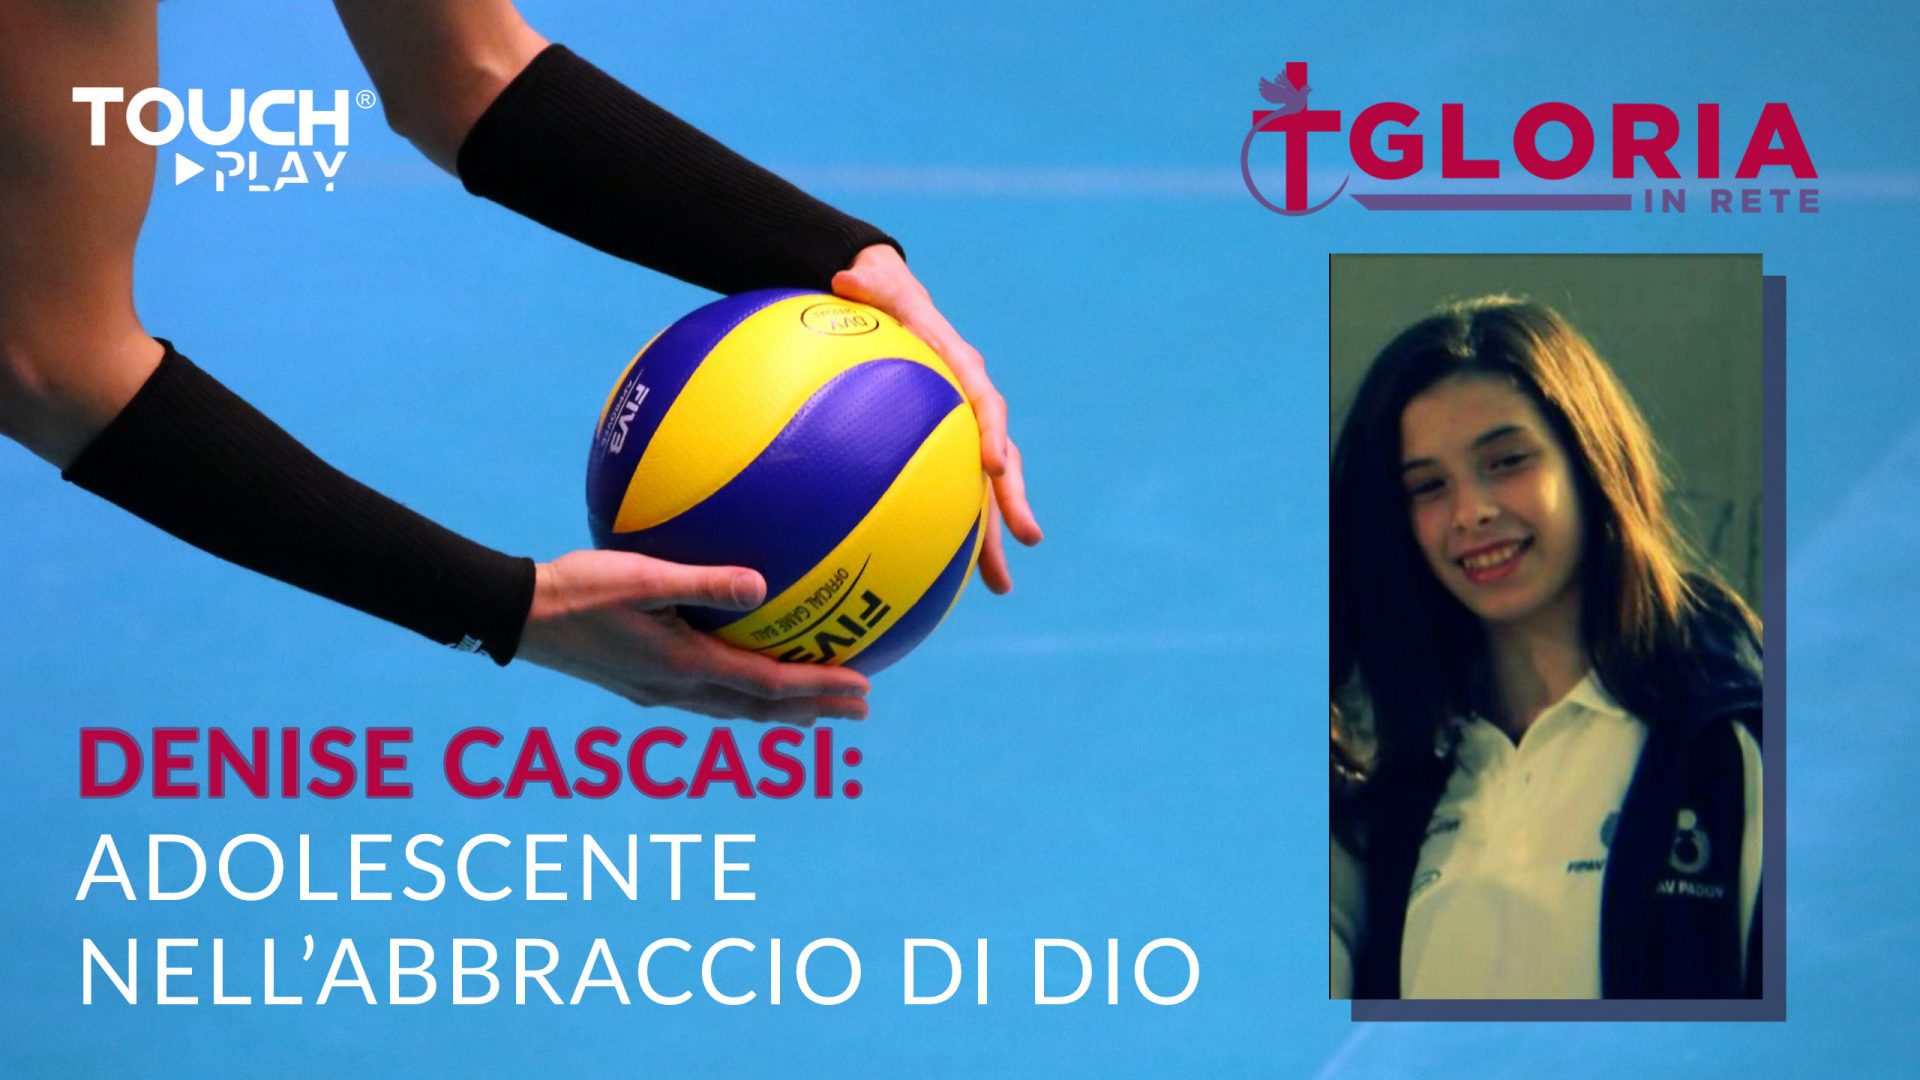 Denise Cascasi, adolescente nell’abbraccio di Dio